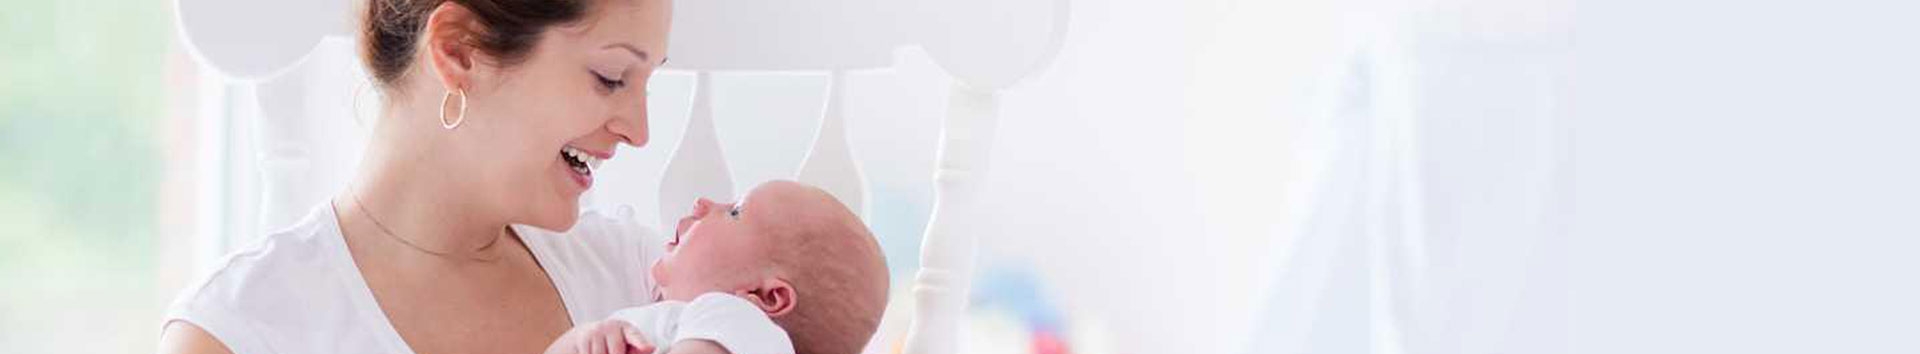 Bebê prematuro: O desenvolvimento do meu filho pode atrasar?